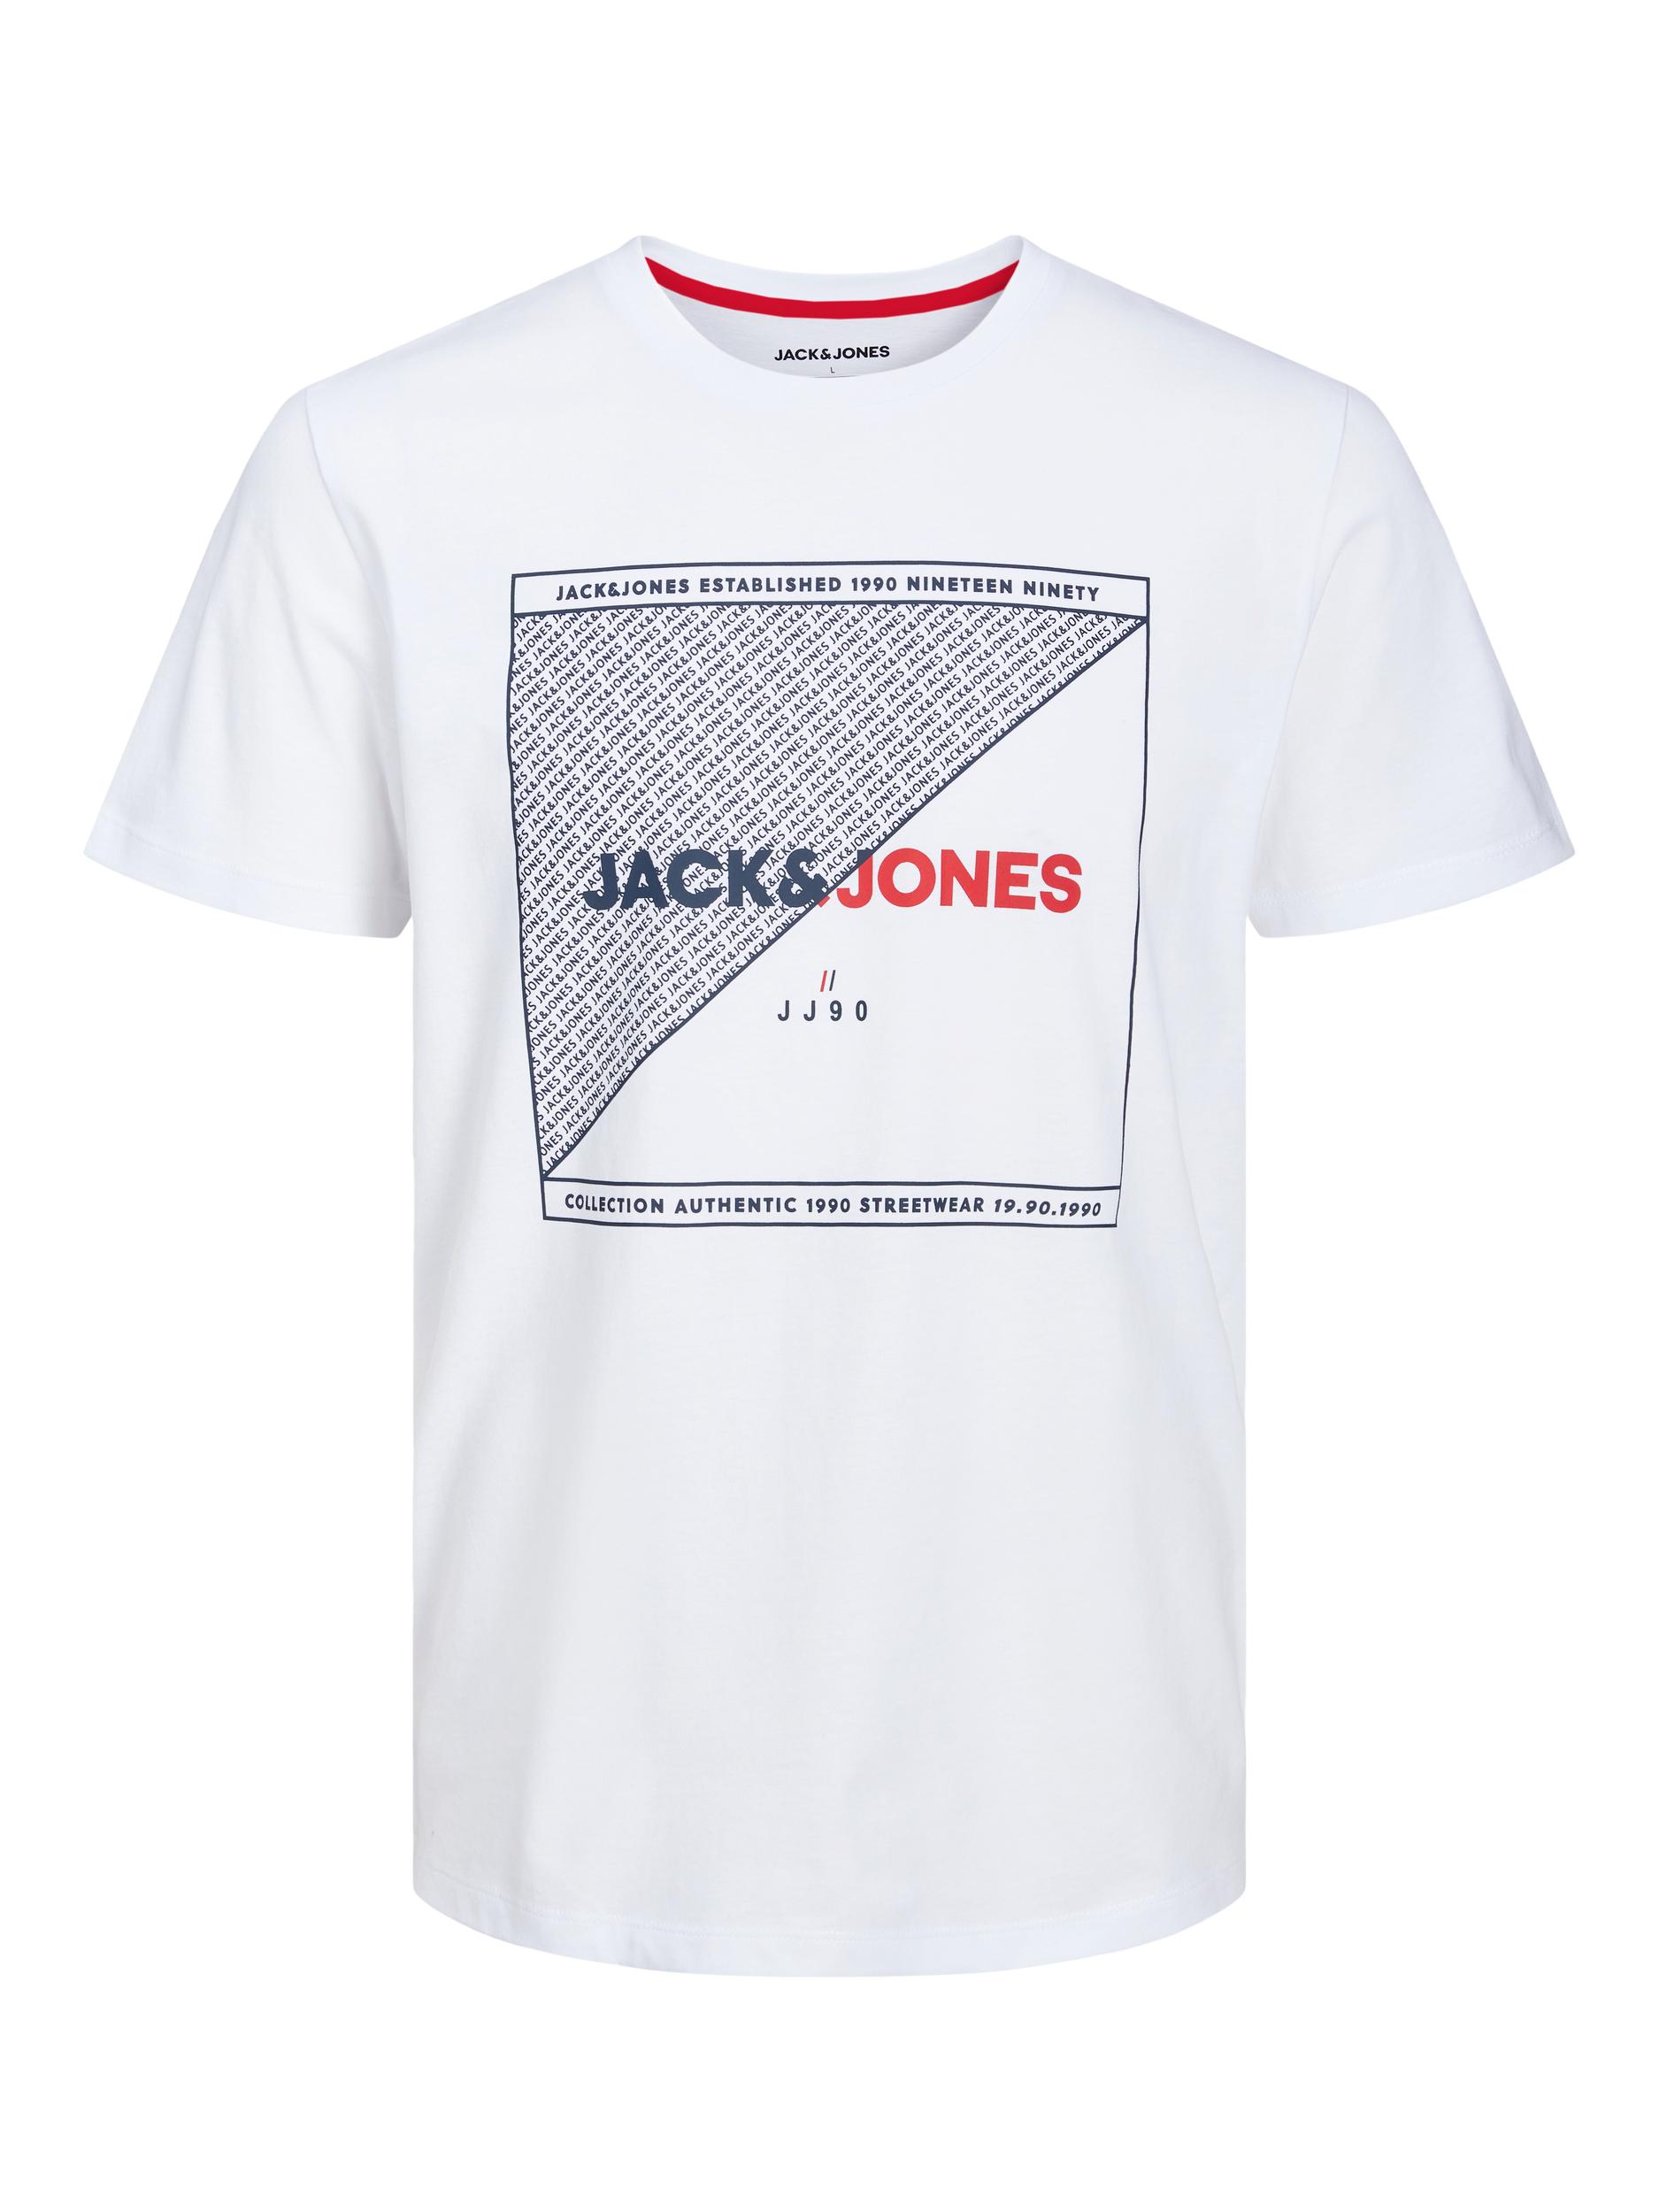 JACK & JONES Big & Tall White Printed T-Shirt | BadRhino 2